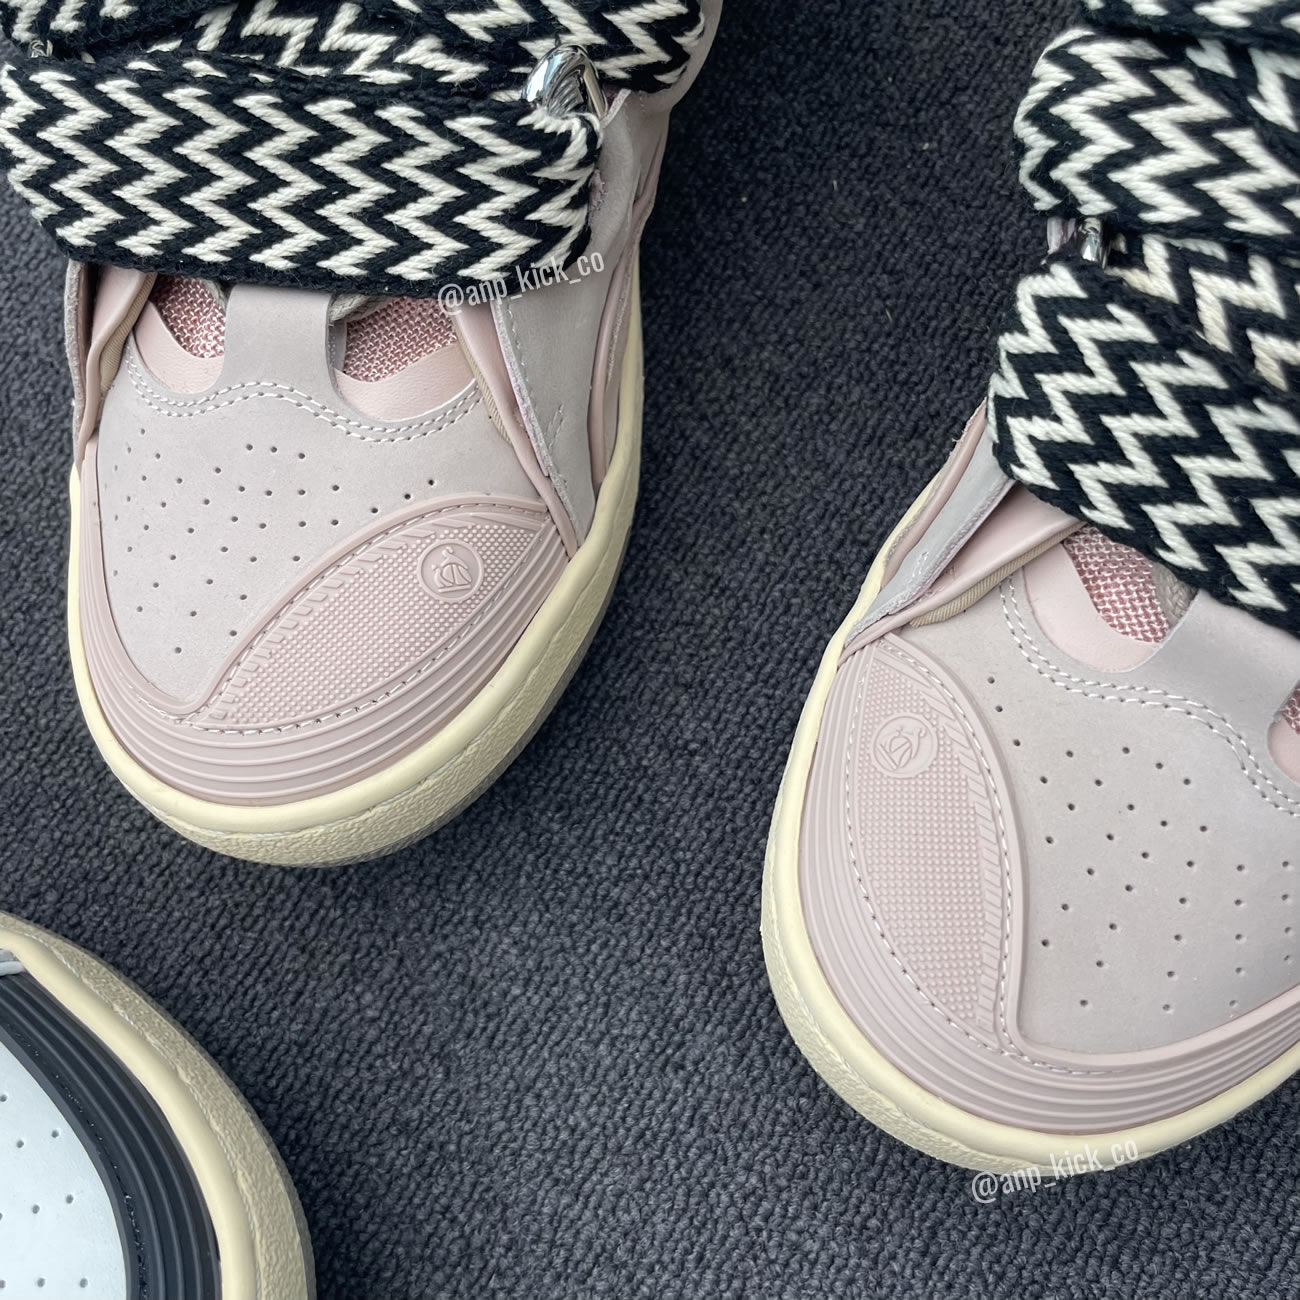 L.A.N.V.I.N Leather Curb Sneakers Pink DRAG-A2051